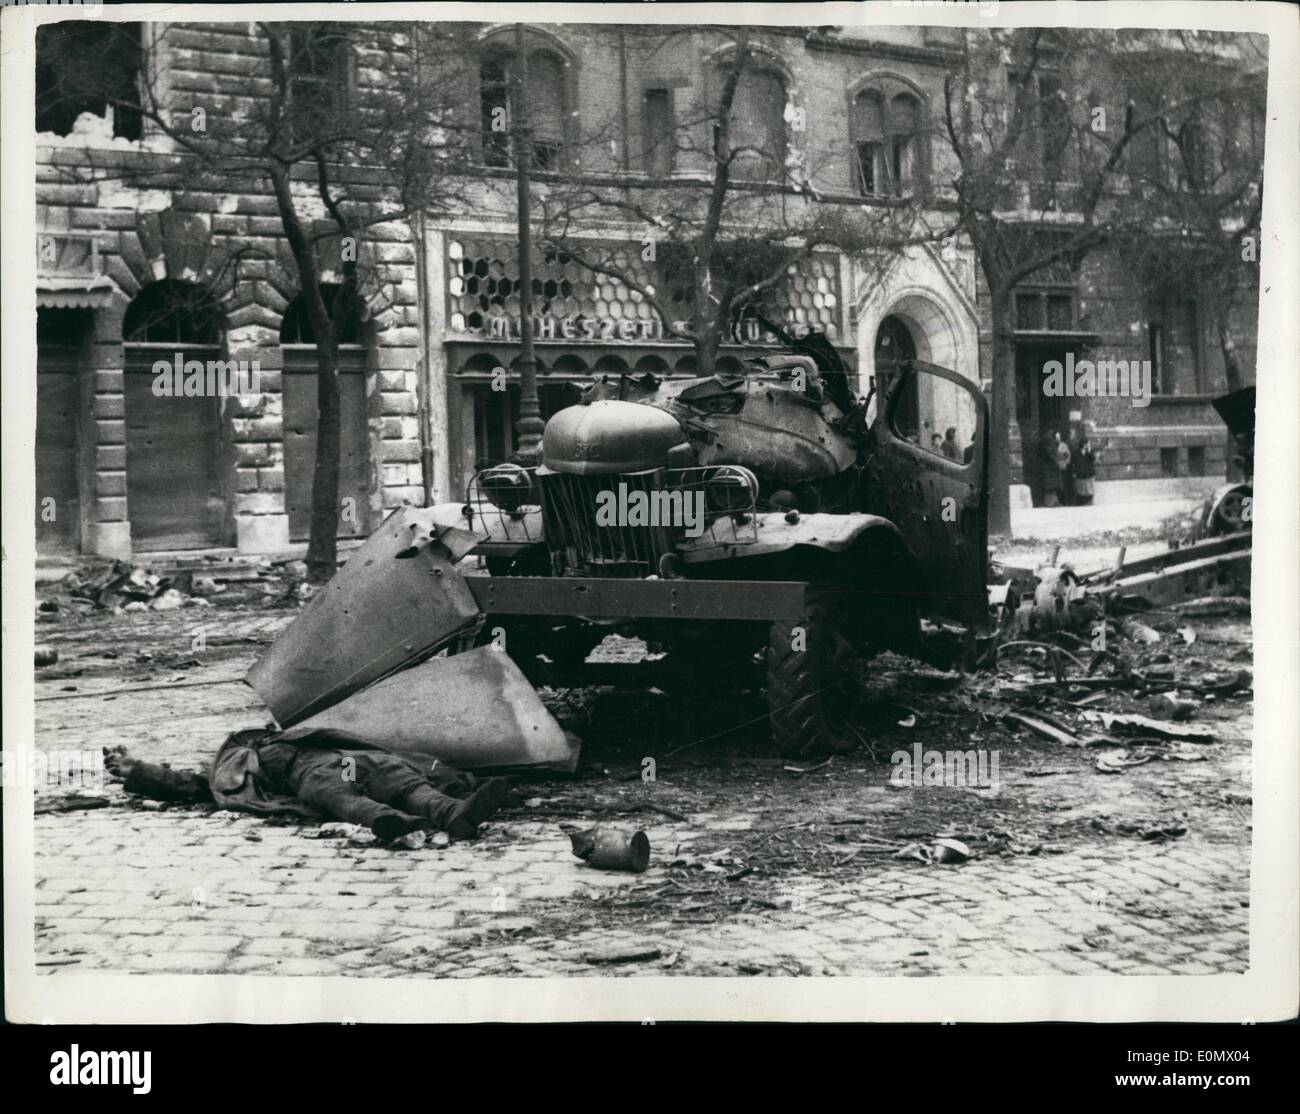 Ottobre 10, 1956 - scena di battaglia per le strade di Budapest un russo giace morto: foto mostra la scena devastanti in Baross street Foto Stock